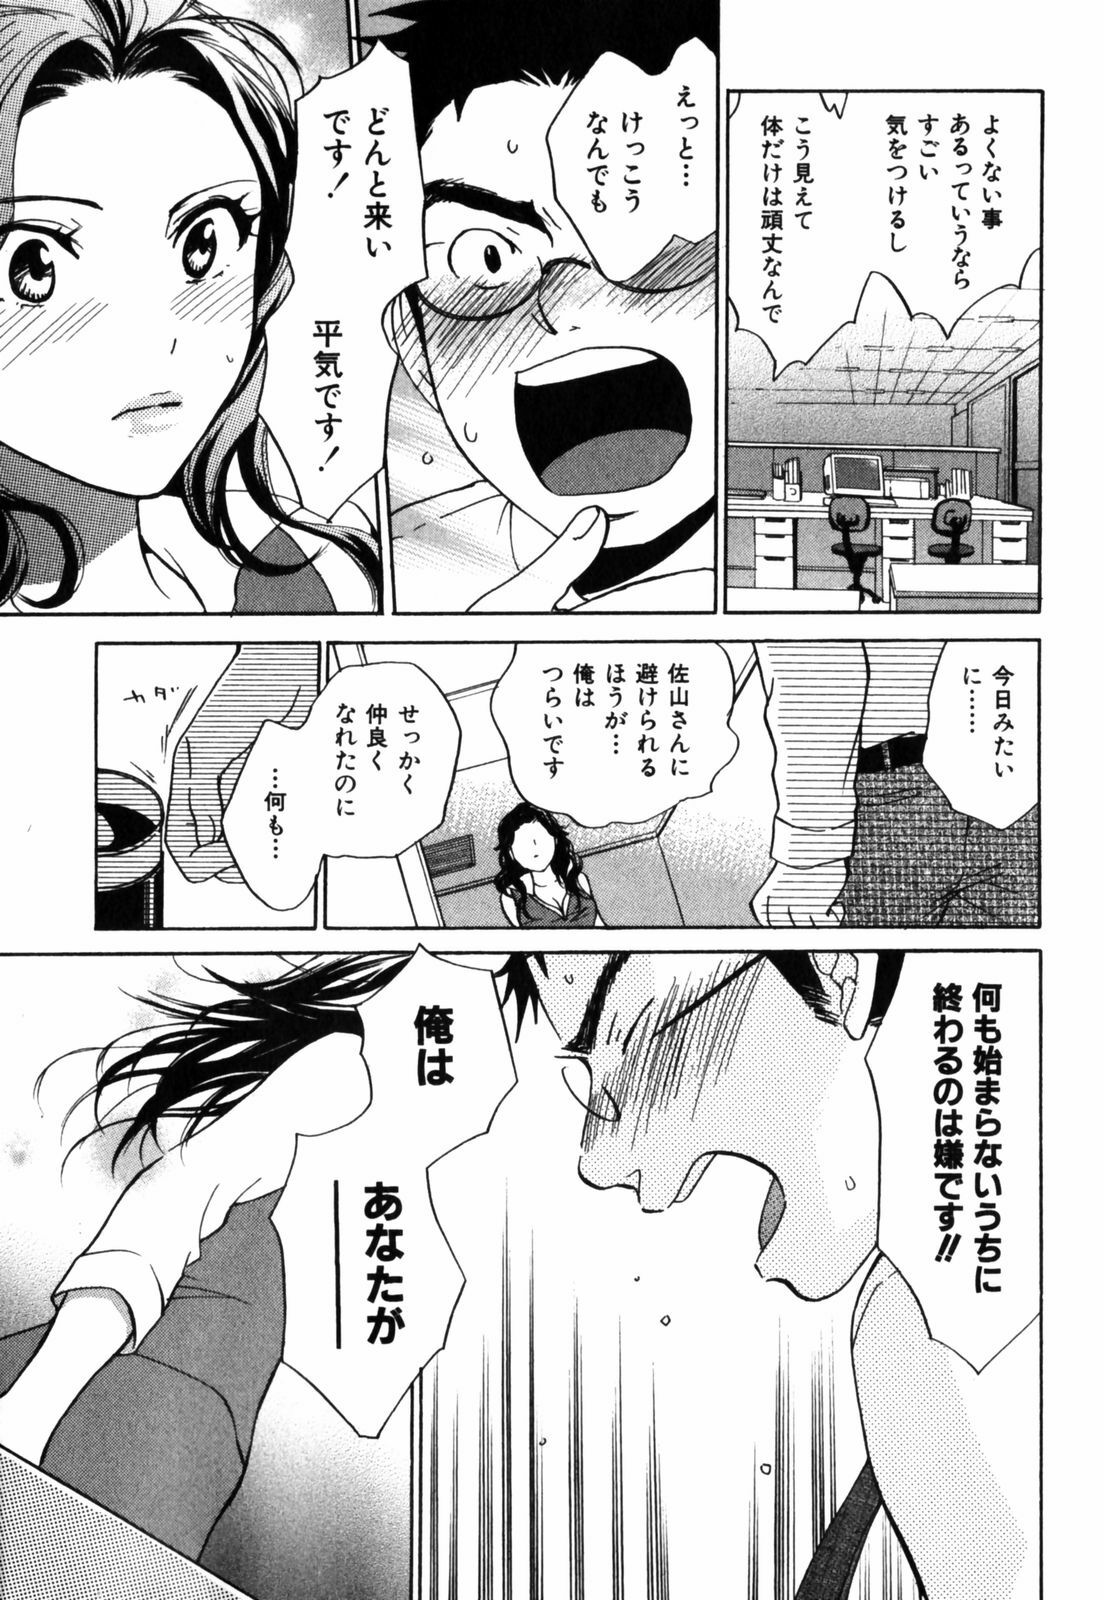 [Harumi Chihiro] Cutie Lips page 38 full